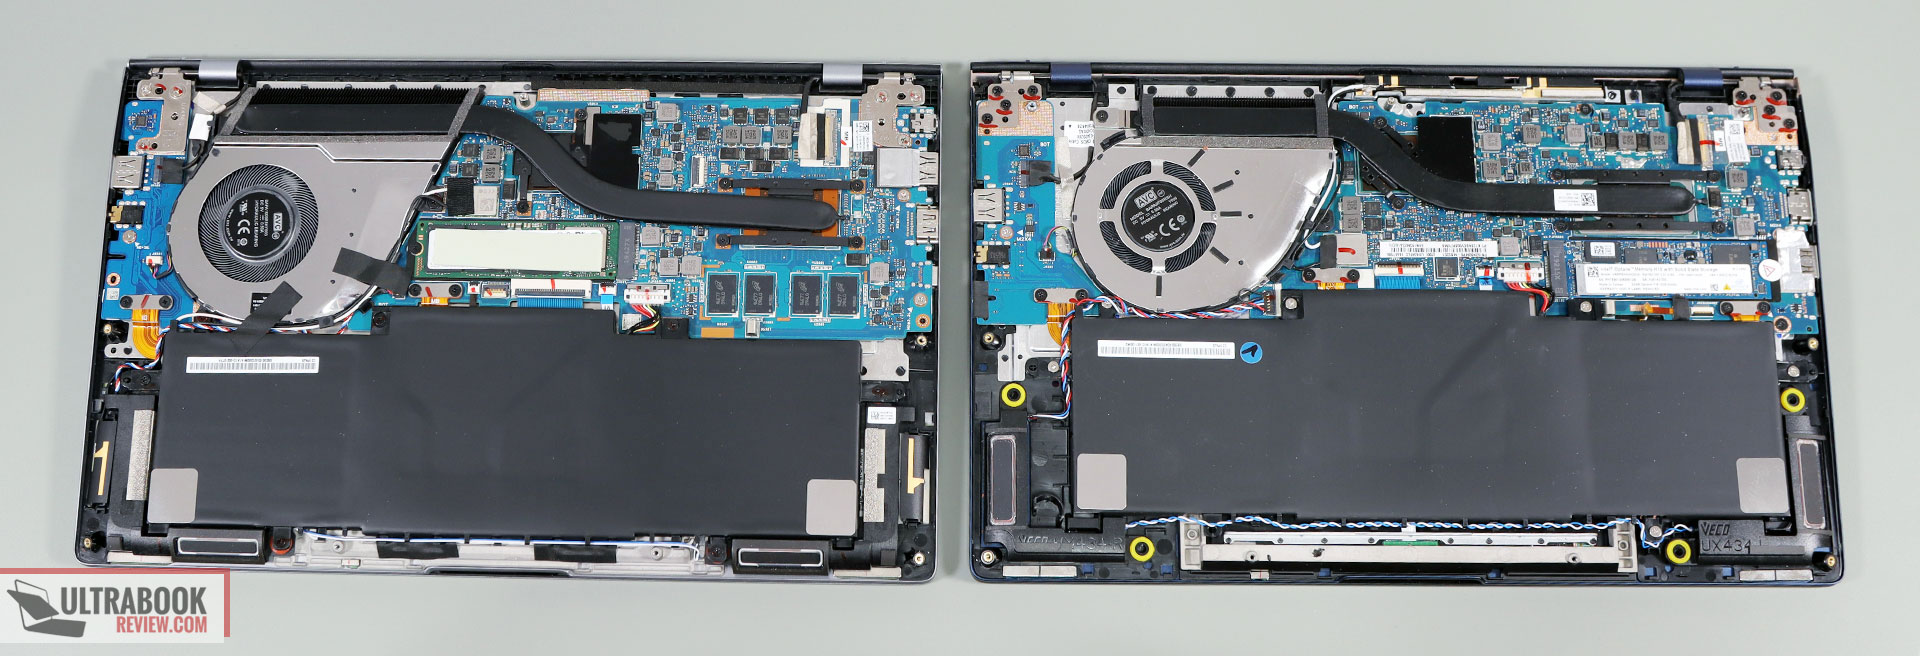 Asus ZenBook 14 - thermal designs